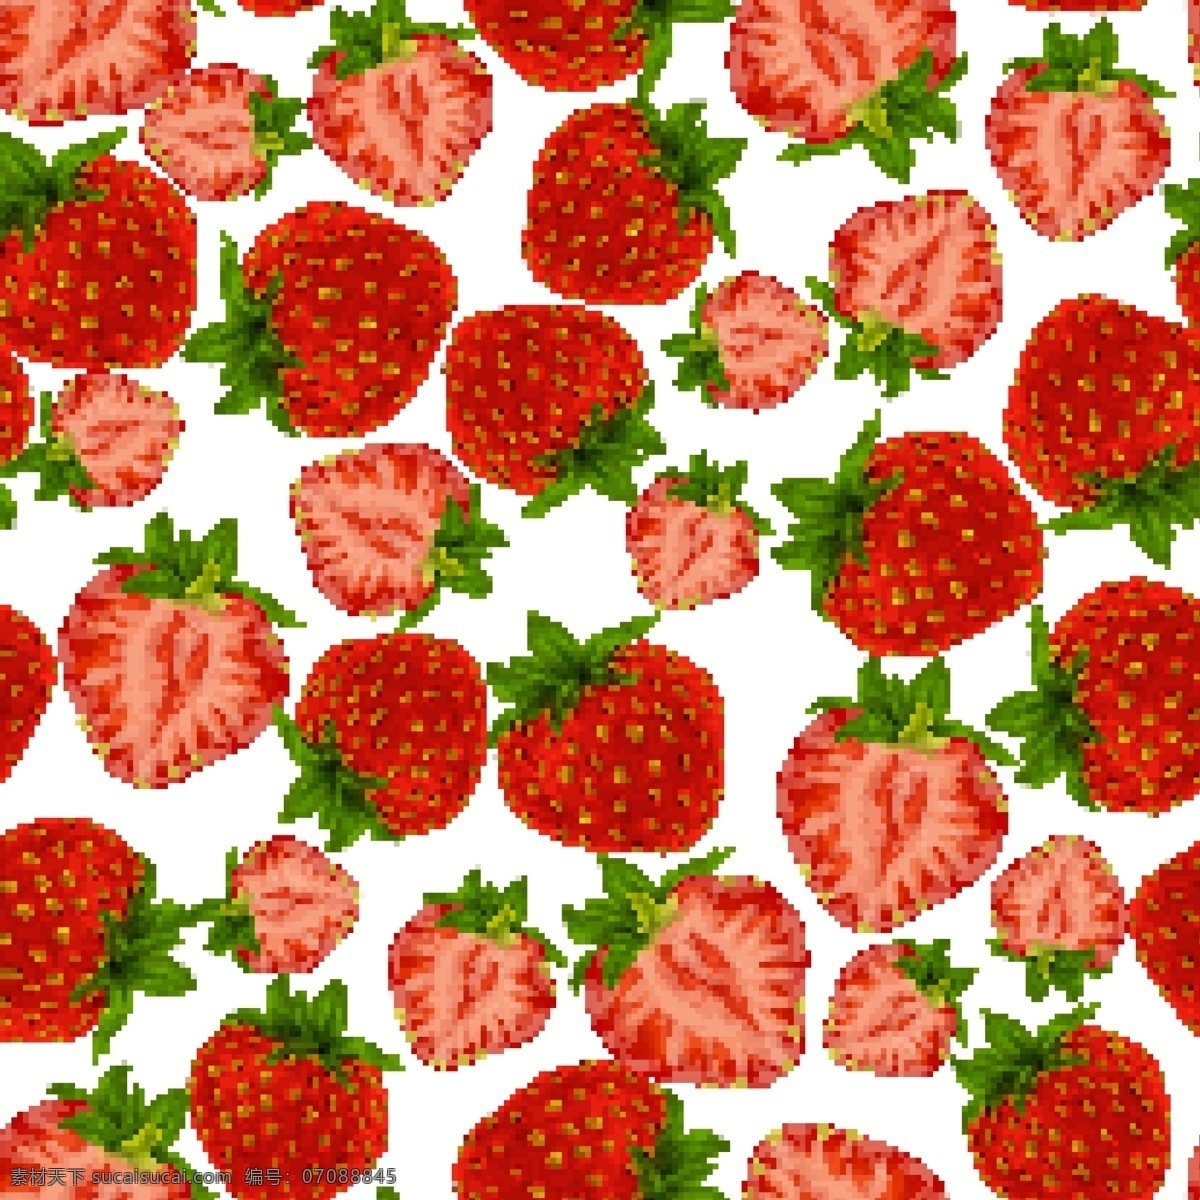 红色 草莓 无缝 背景 红色草莓背景 红色草莓 无缝背景 草莓无缝背景 手绘